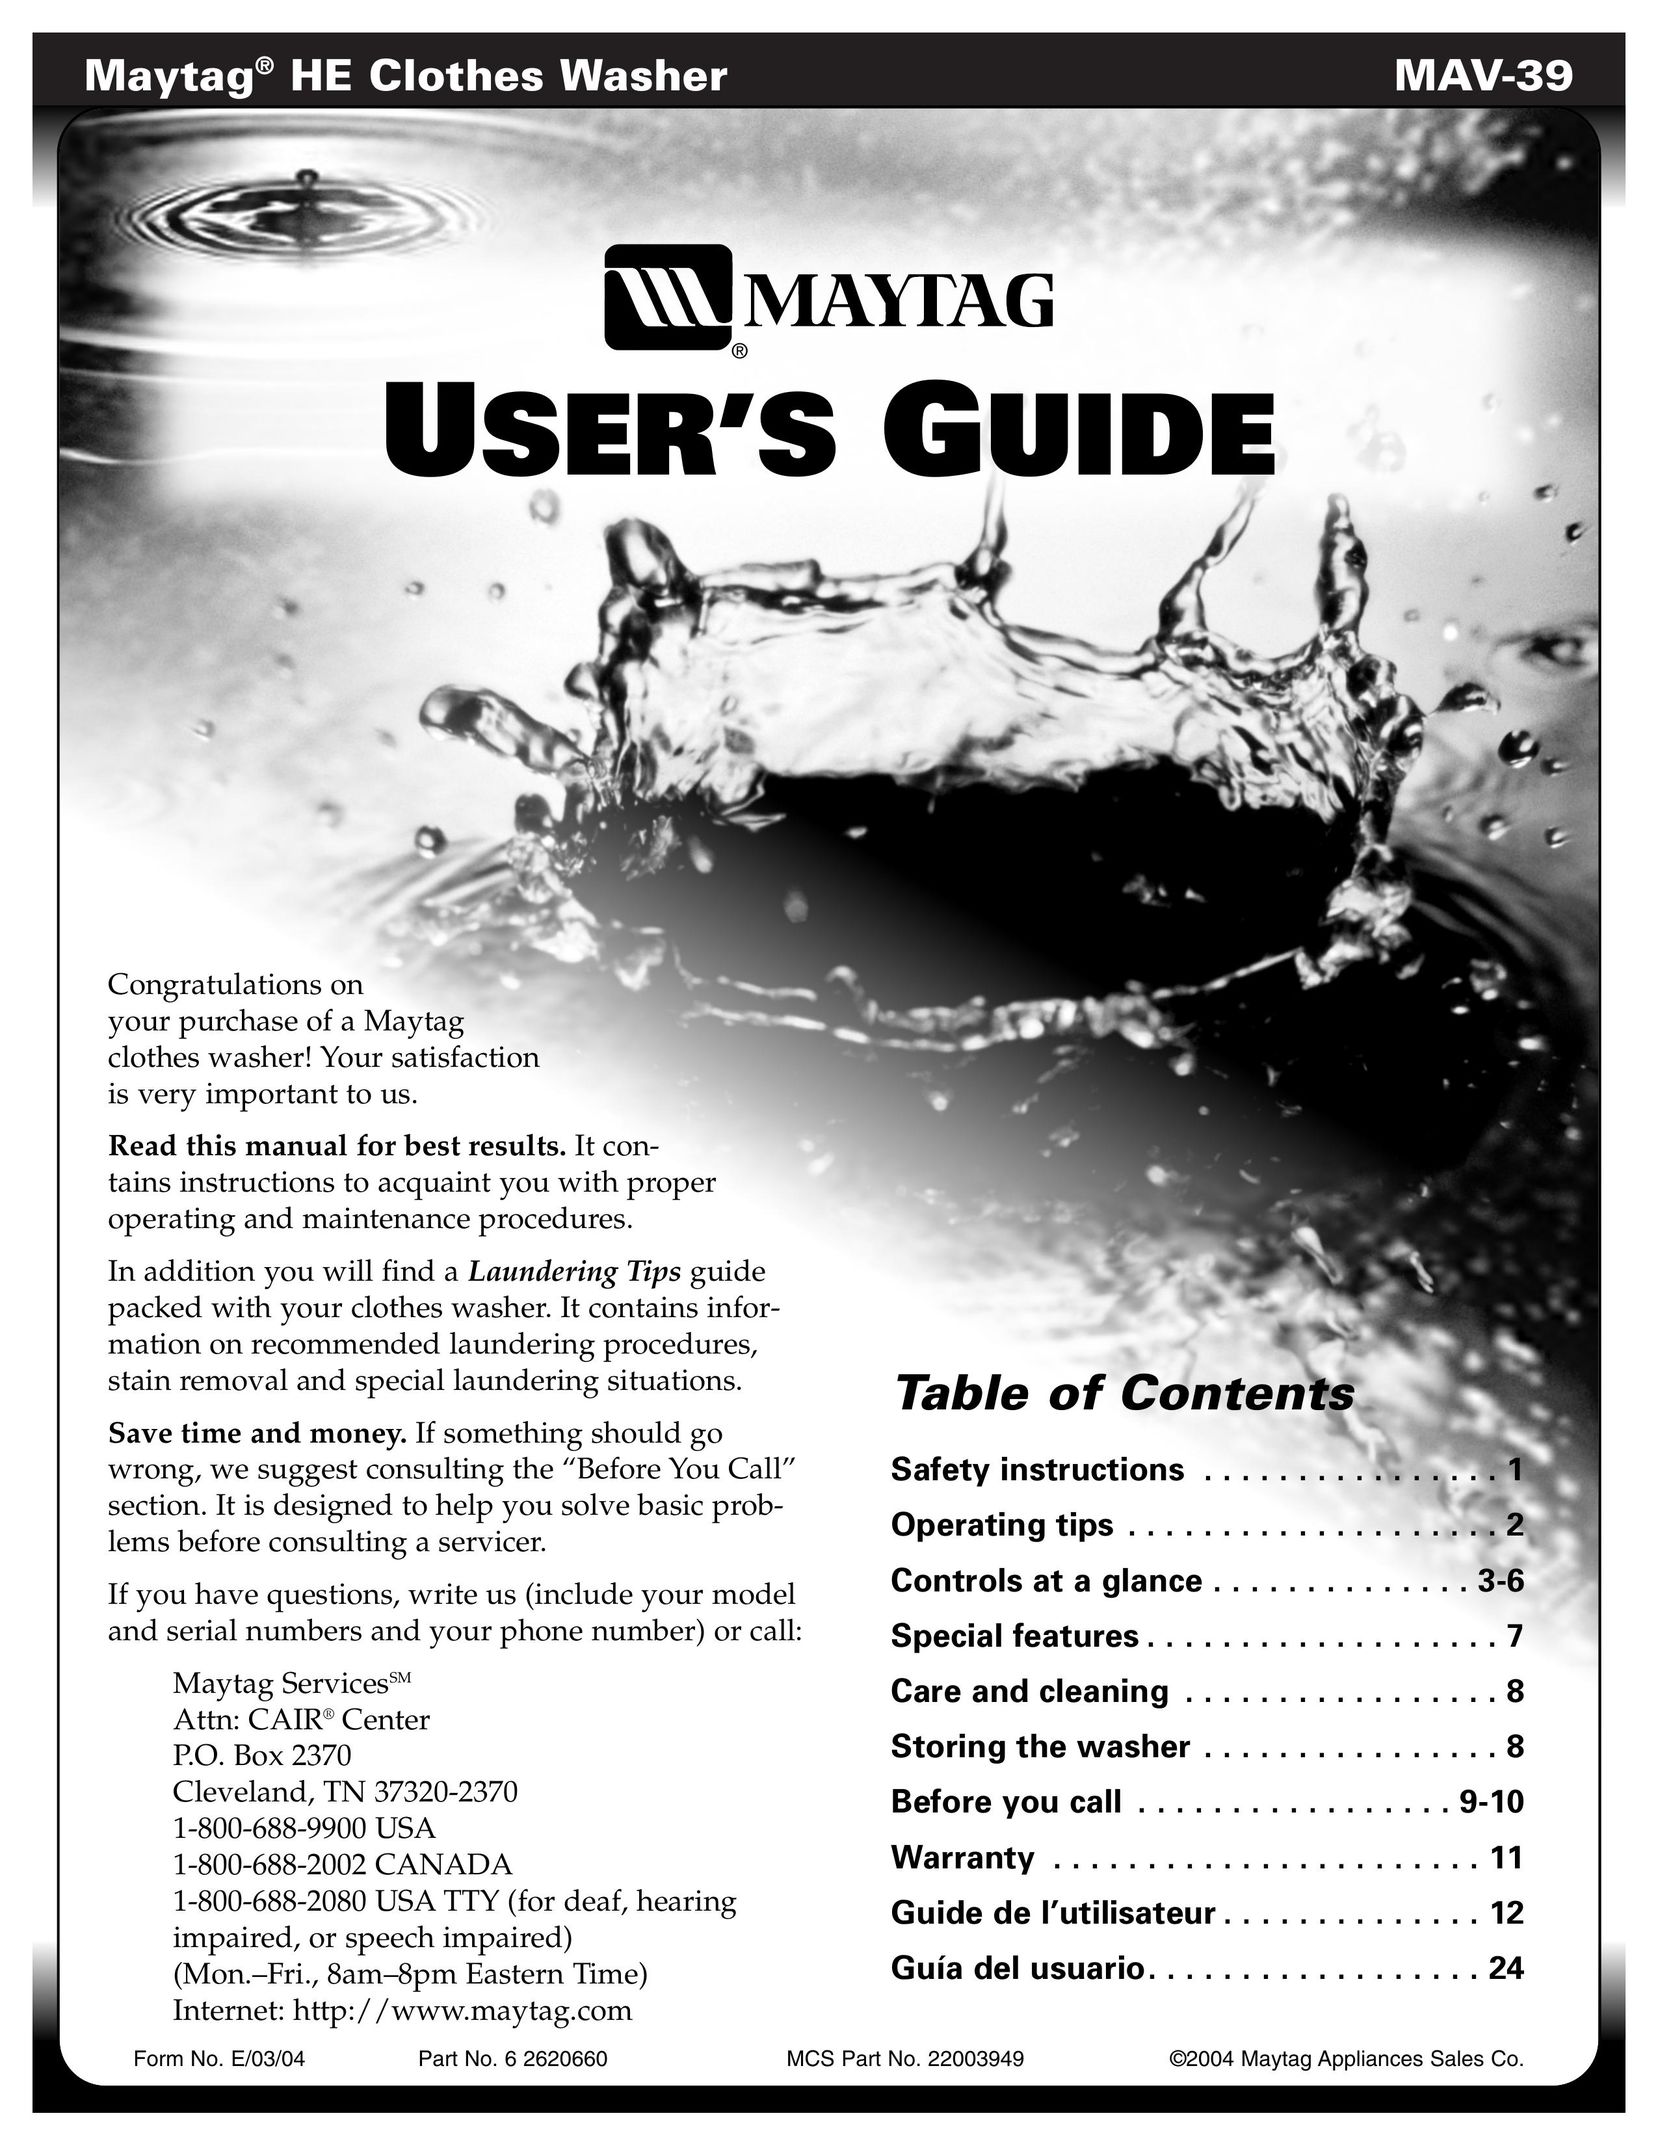 Maytag MAV-39 Freezer User Manual